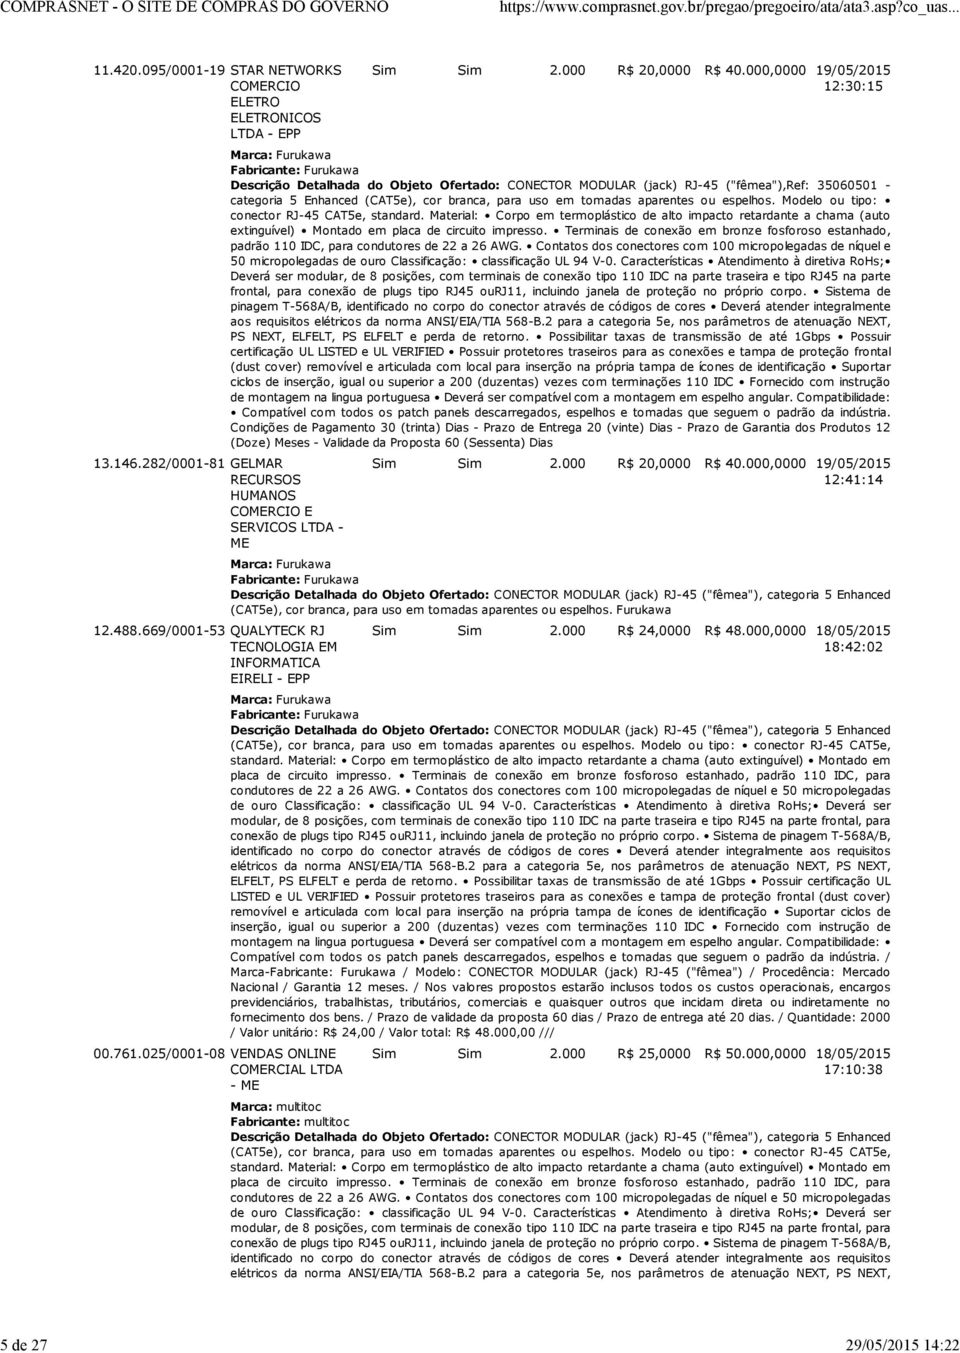 000,0000 19/05/2015 12:30:15 Descrição Detalhada do Objeto Ofertado: CONECTOR MODULAR (jack) RJ-45 ("fêmea"),ref: 35060501 - categoria 5 Enhanced (CAT5e), cor branca, para uso em tomadas aparentes ou